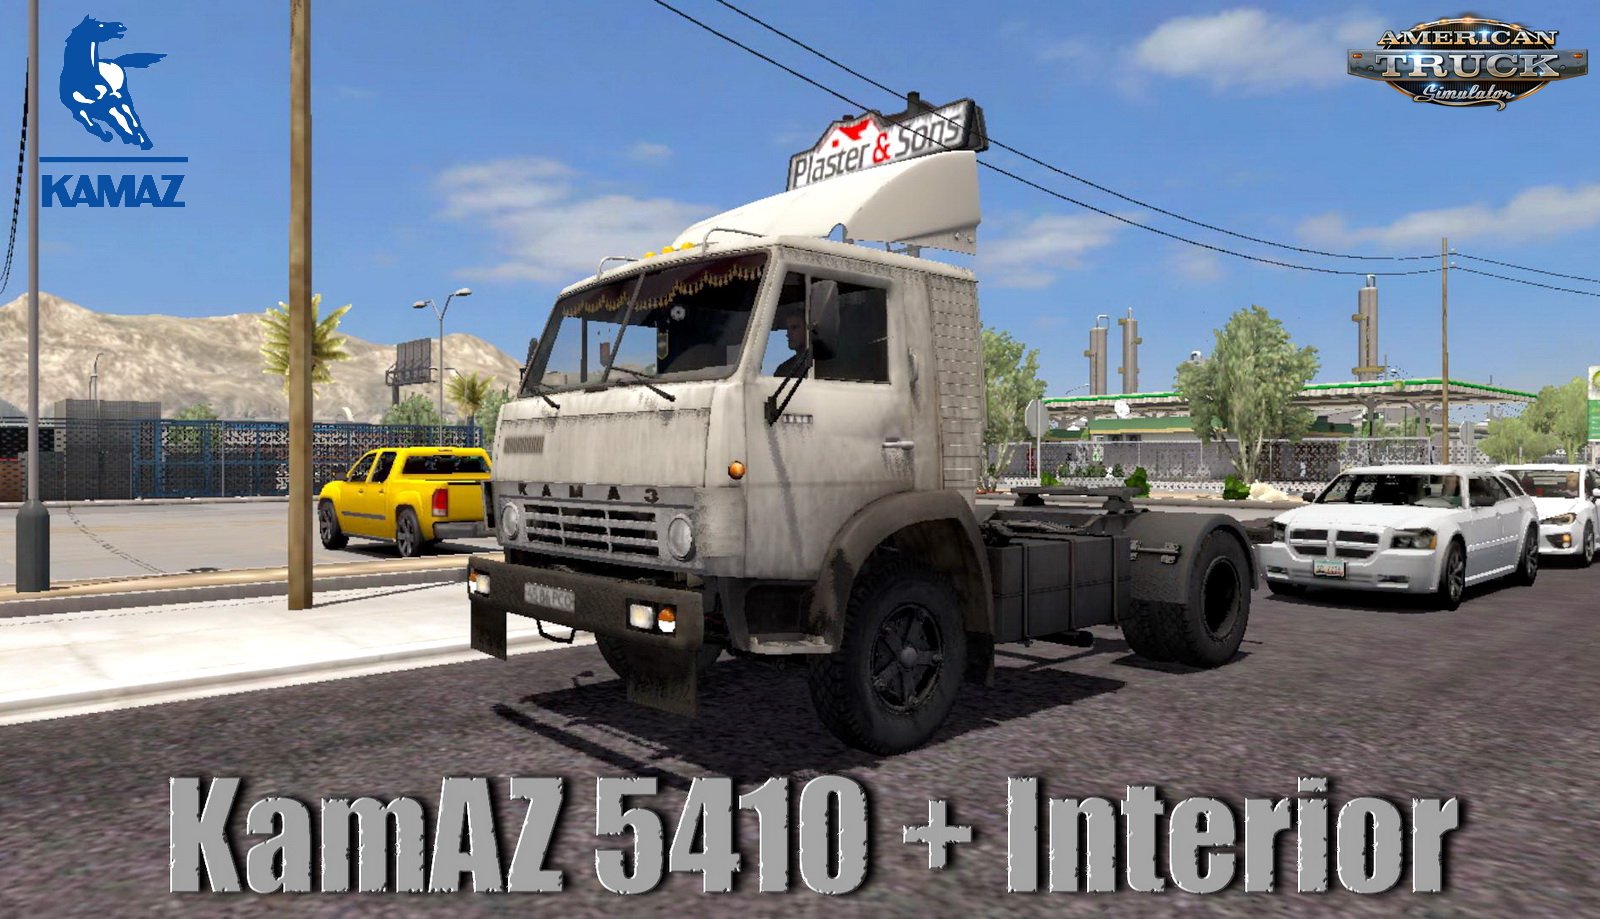 KamAZ 5410 + Interior v2.0 (1.35.x) for ATS